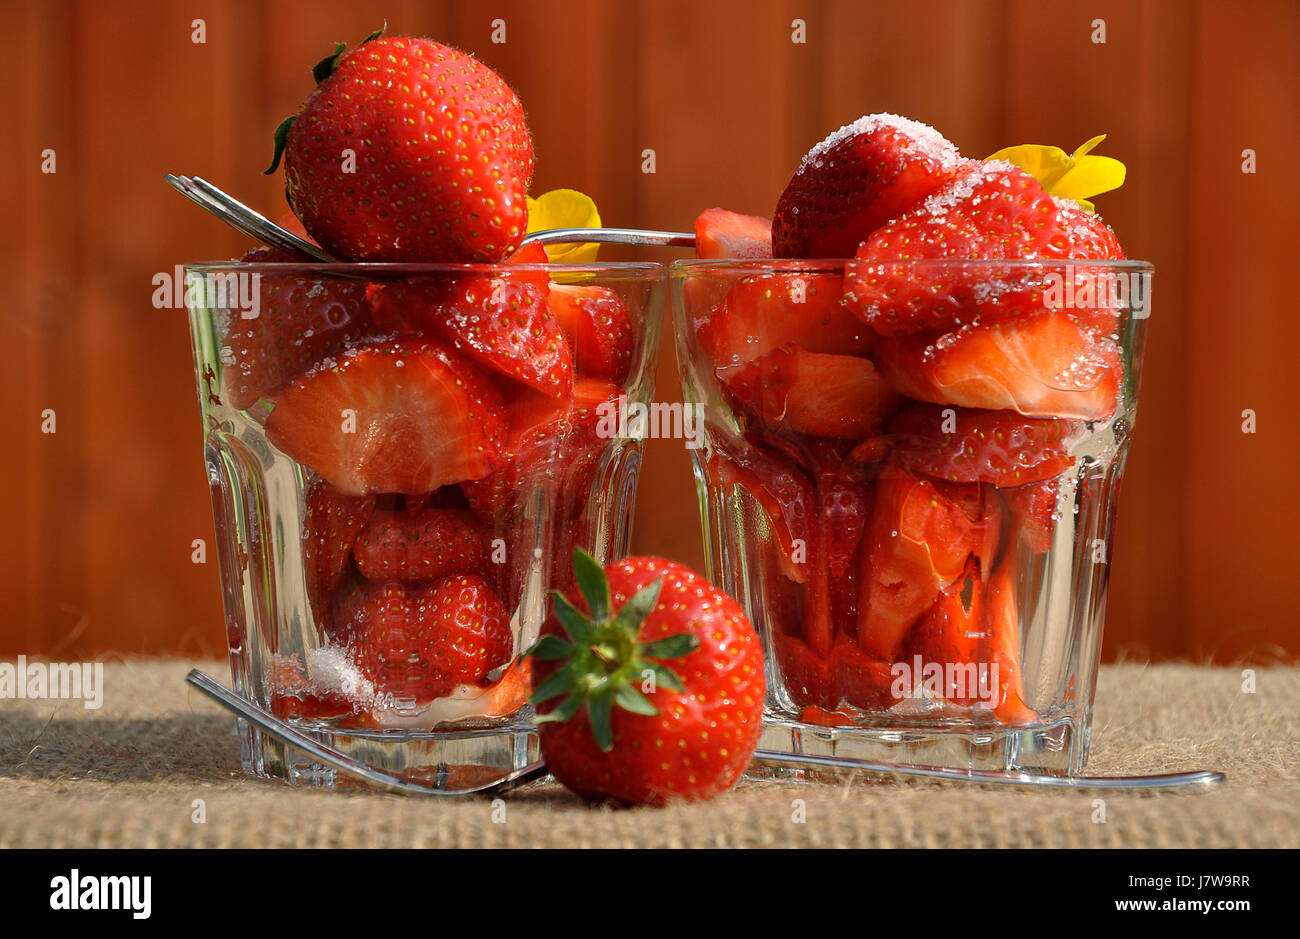 Bicchieri fragola vetraio ruddiness vetroso di colore rosso da dessert fragole bicchieri Foto Stock